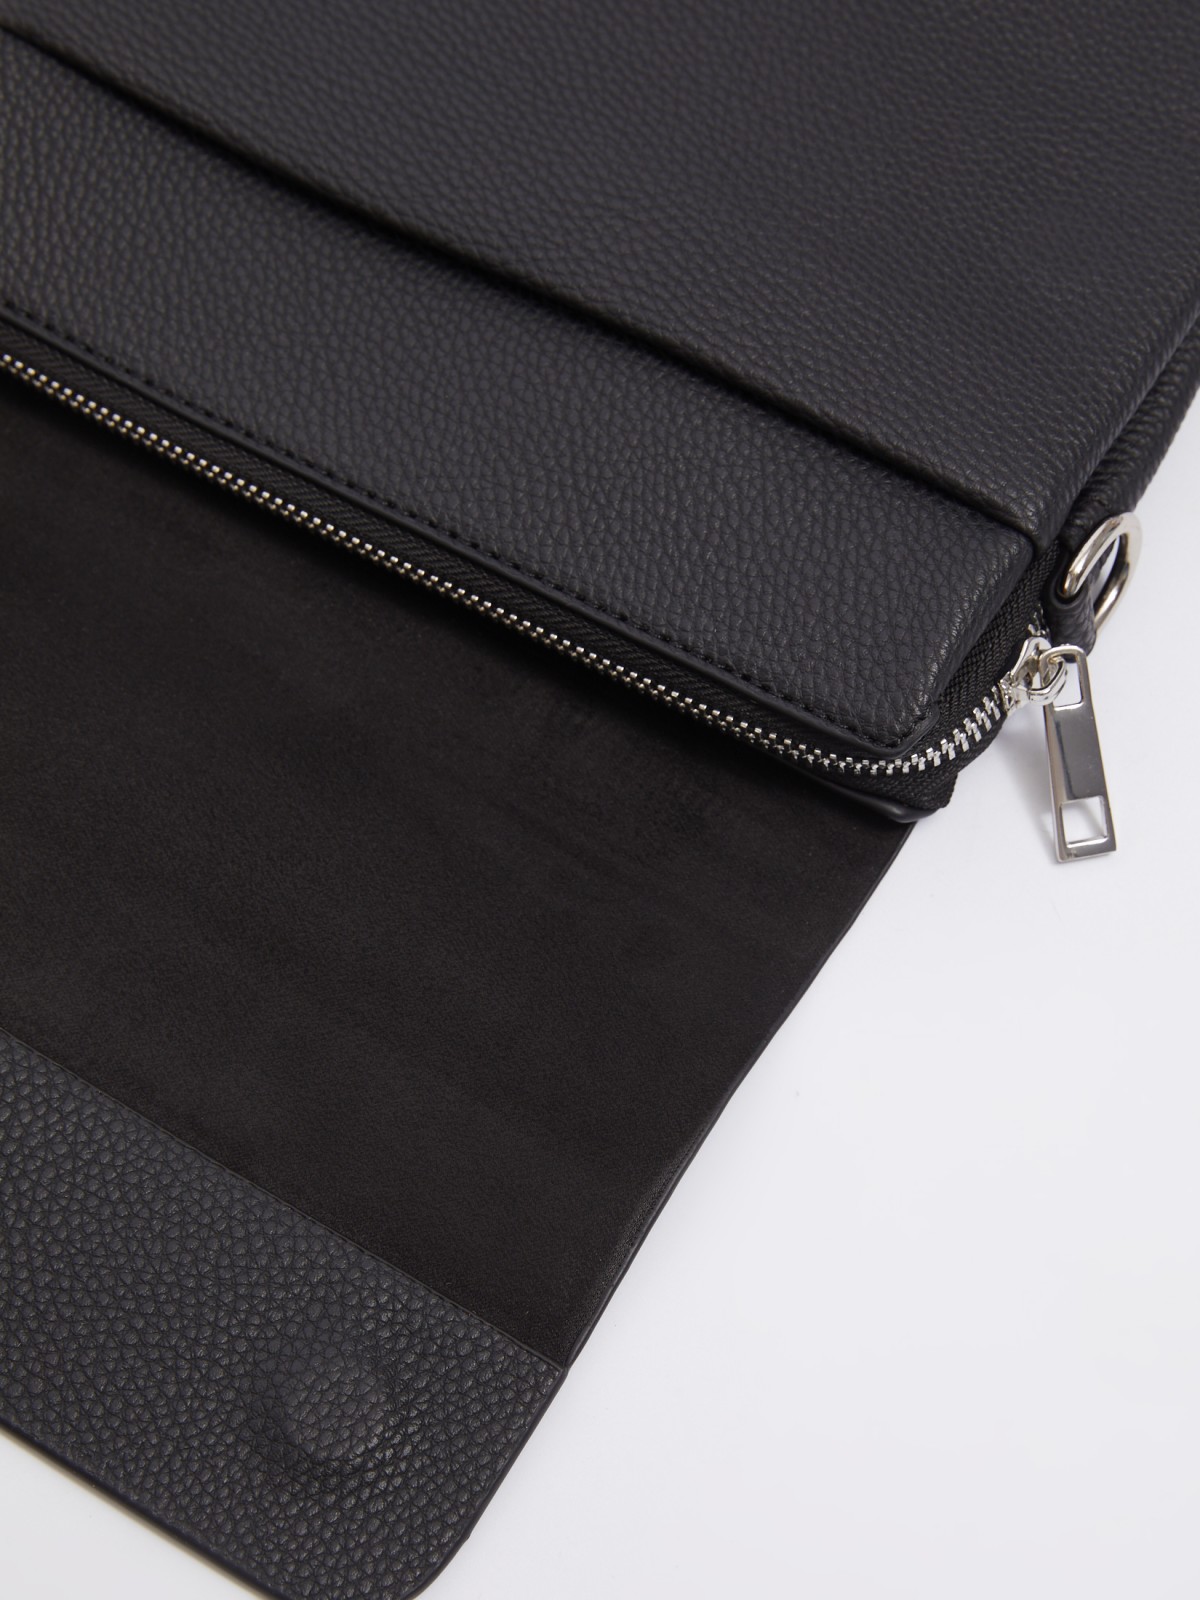 Сумка-планшет из экокожи с ремешком на плечо zolla 014119462045, цвет черный, размер No_size - фото 3